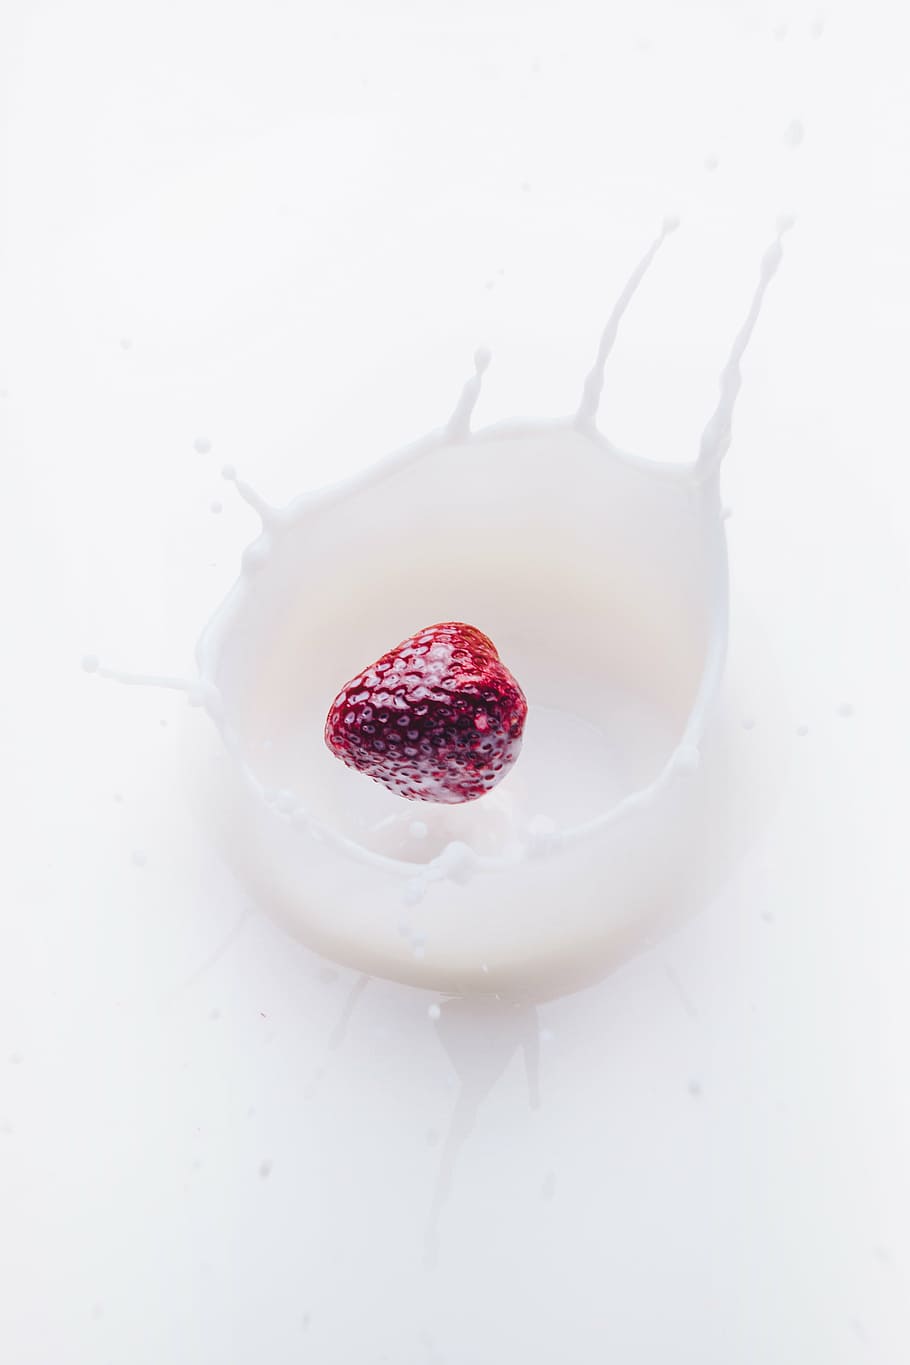 morango, fotografia de leite, fruta, caindo, branco, líquido, leite, vermelho, framboesa, creme